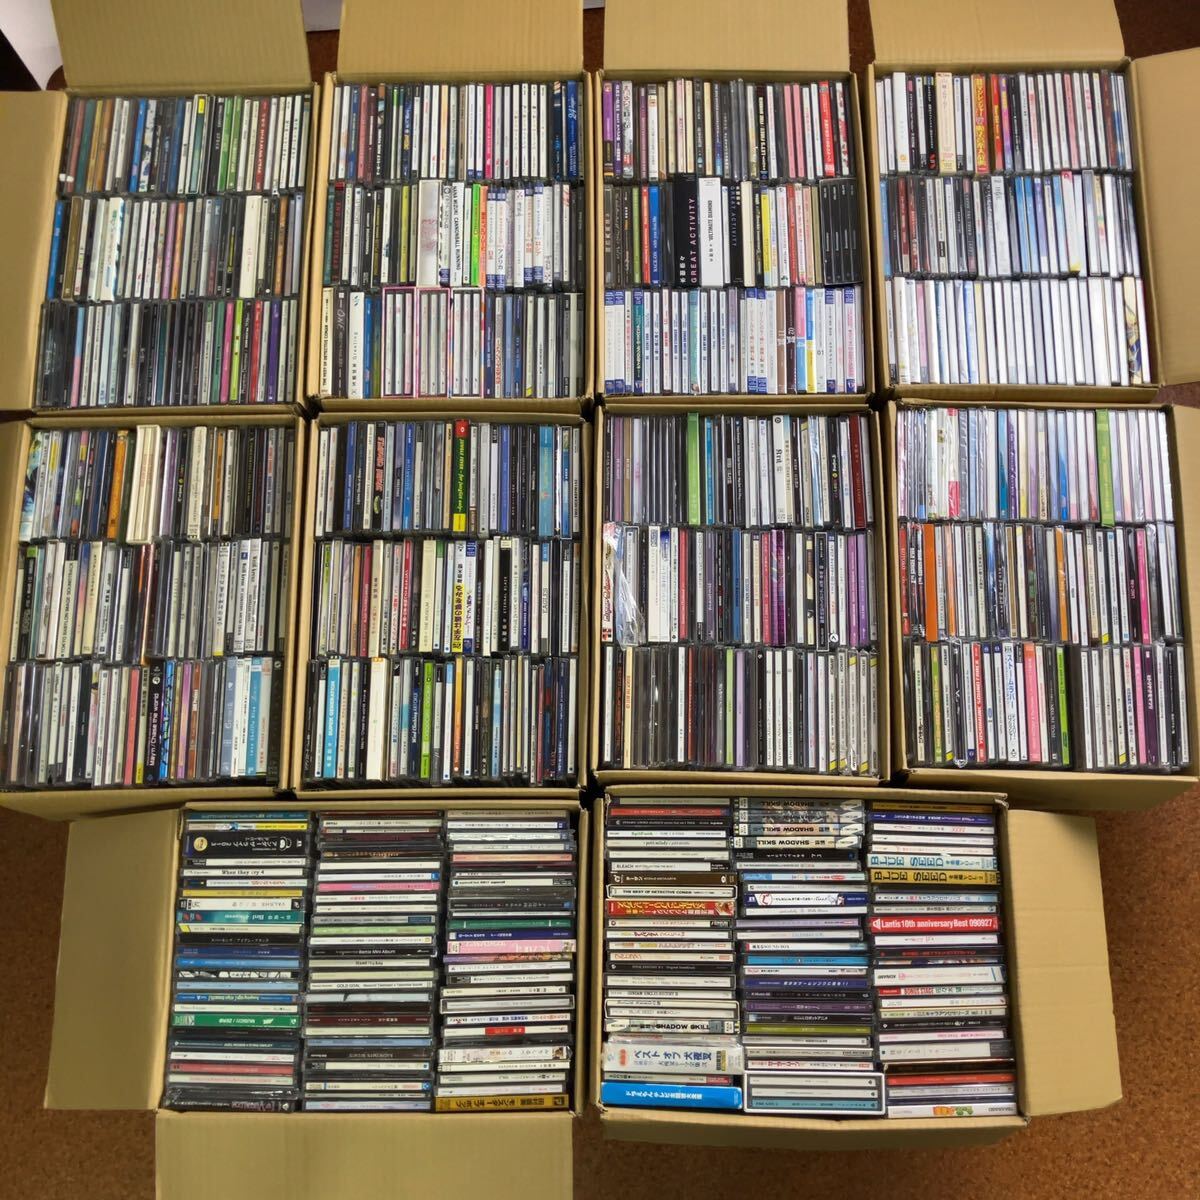  аниме CD голос актера тематическая песня 100 размер 10 коробка продажа комплектом примерно 1600 листов ликвидация запасов перепродажа для 